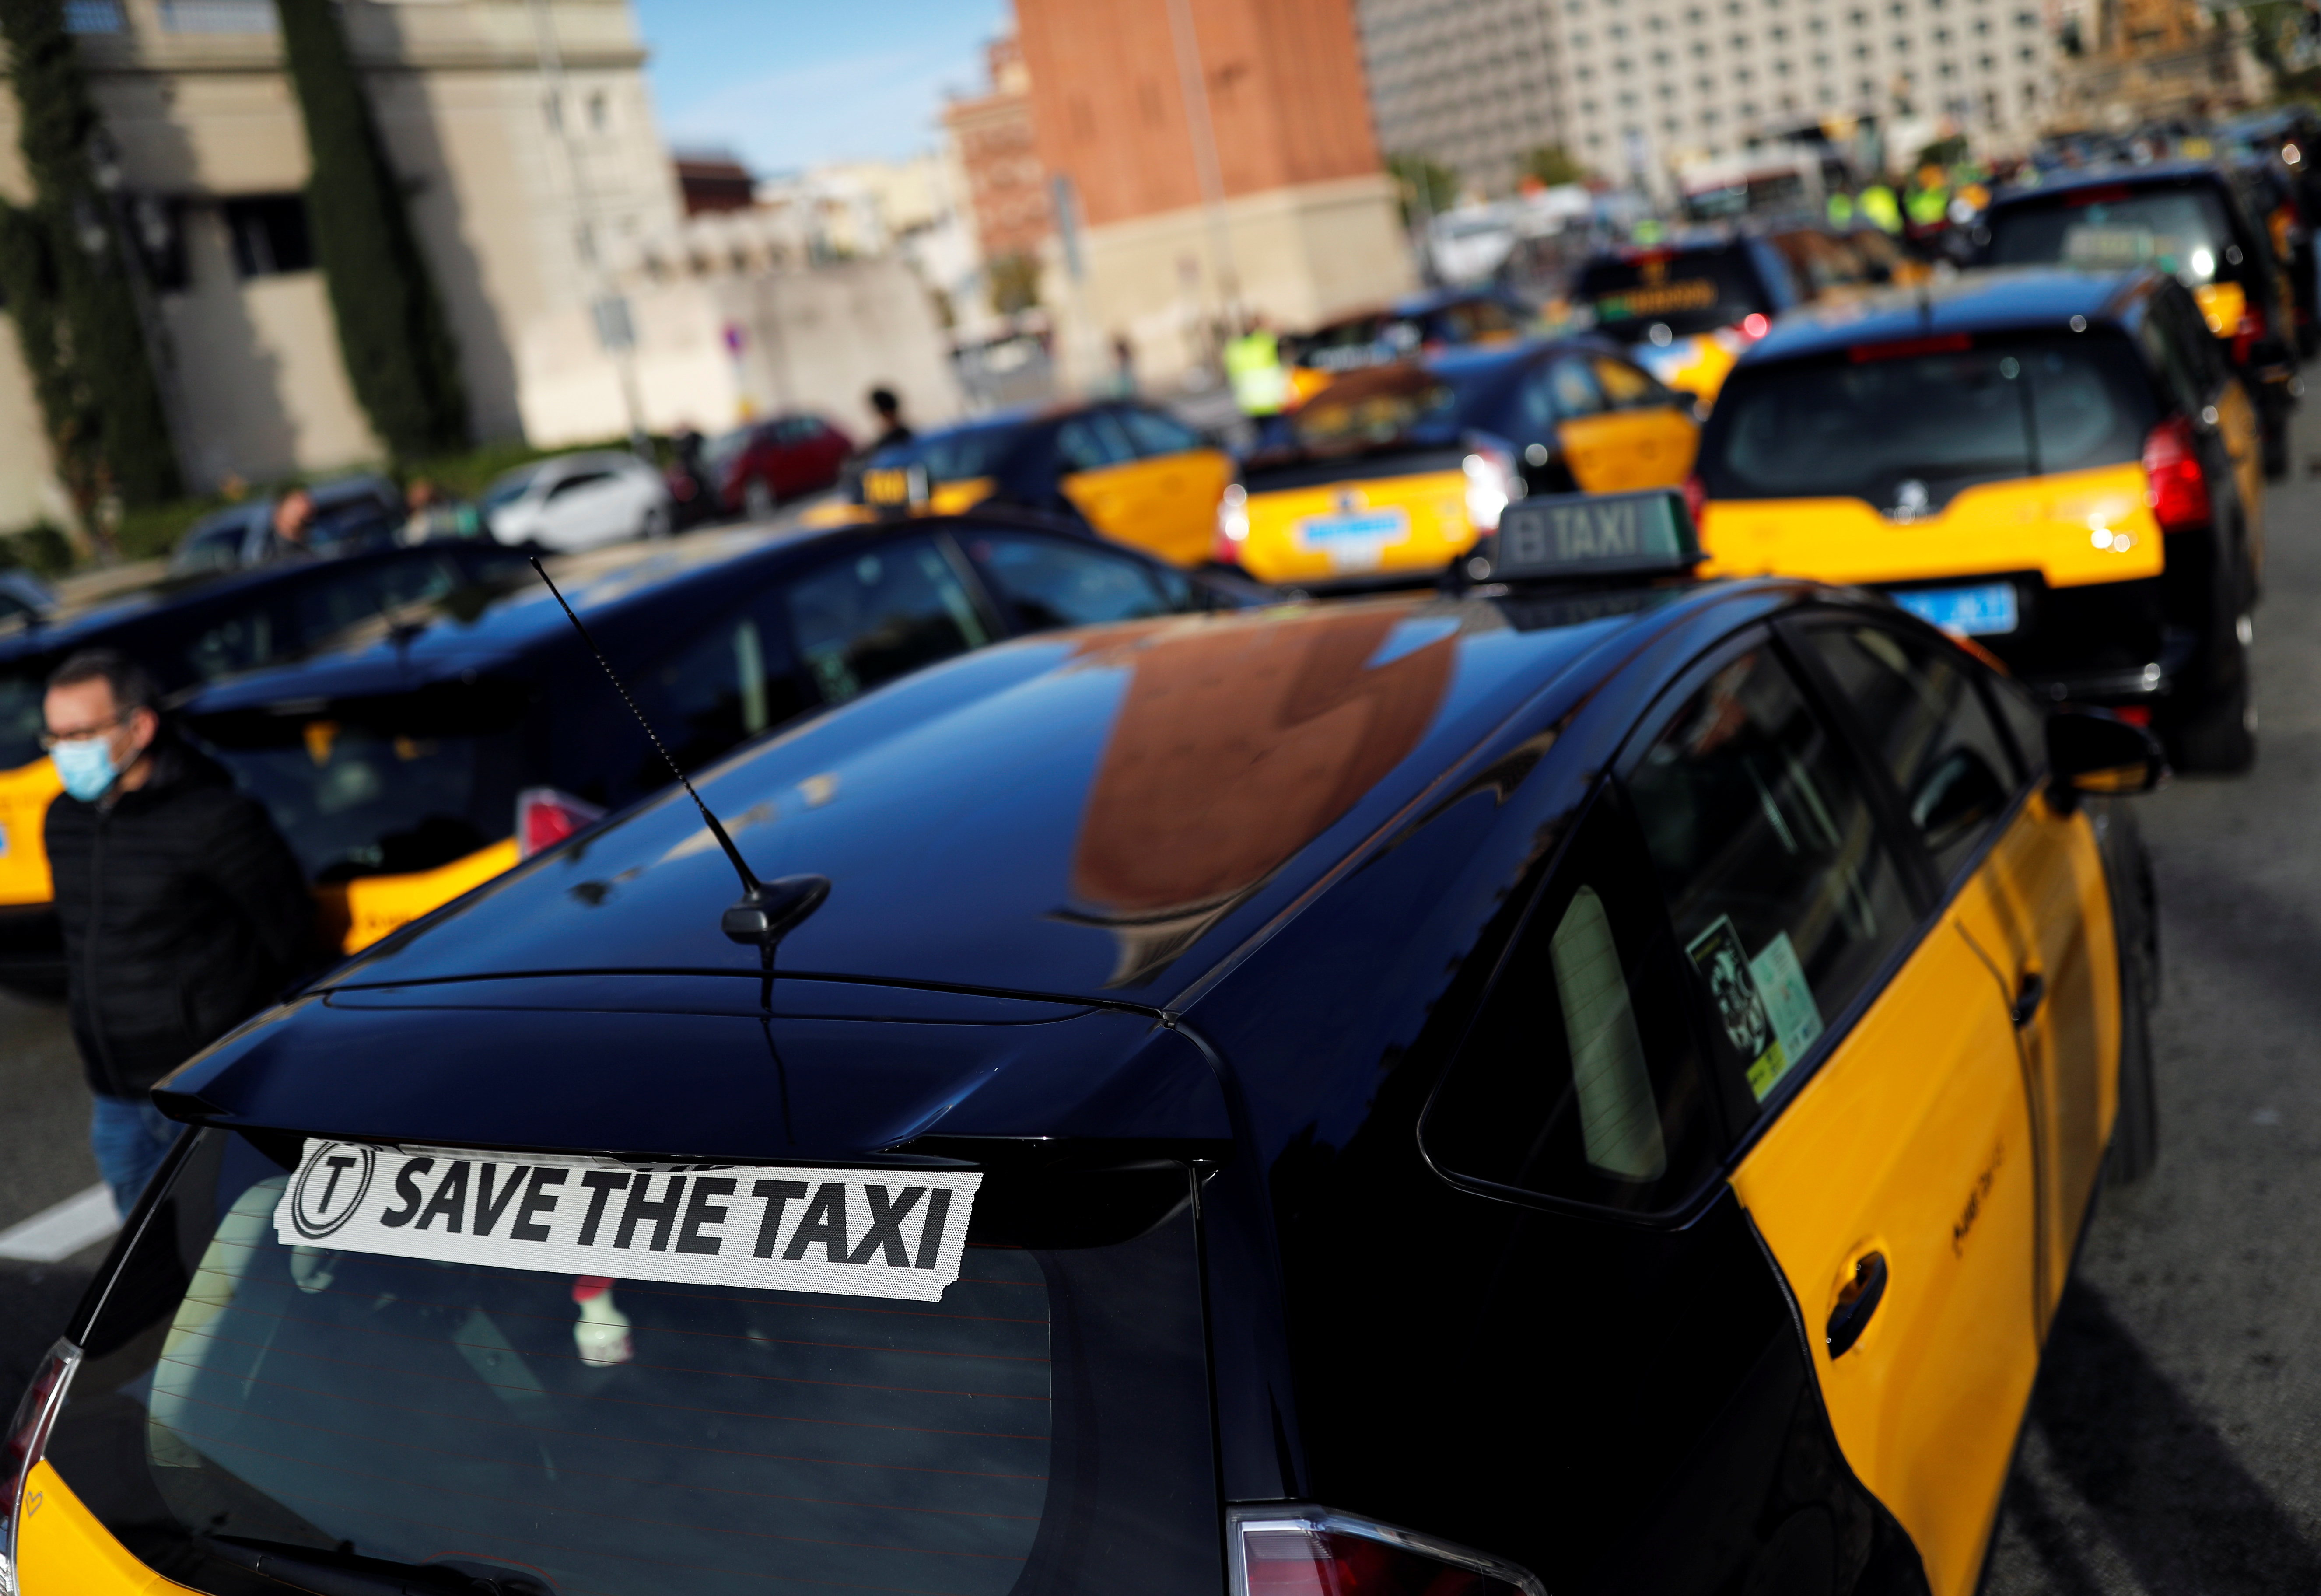 Taxistas protestan por la caída de la demanda como resultado de las nuevas restricciones en Barcelona (REUTERS/Nacho Doce)